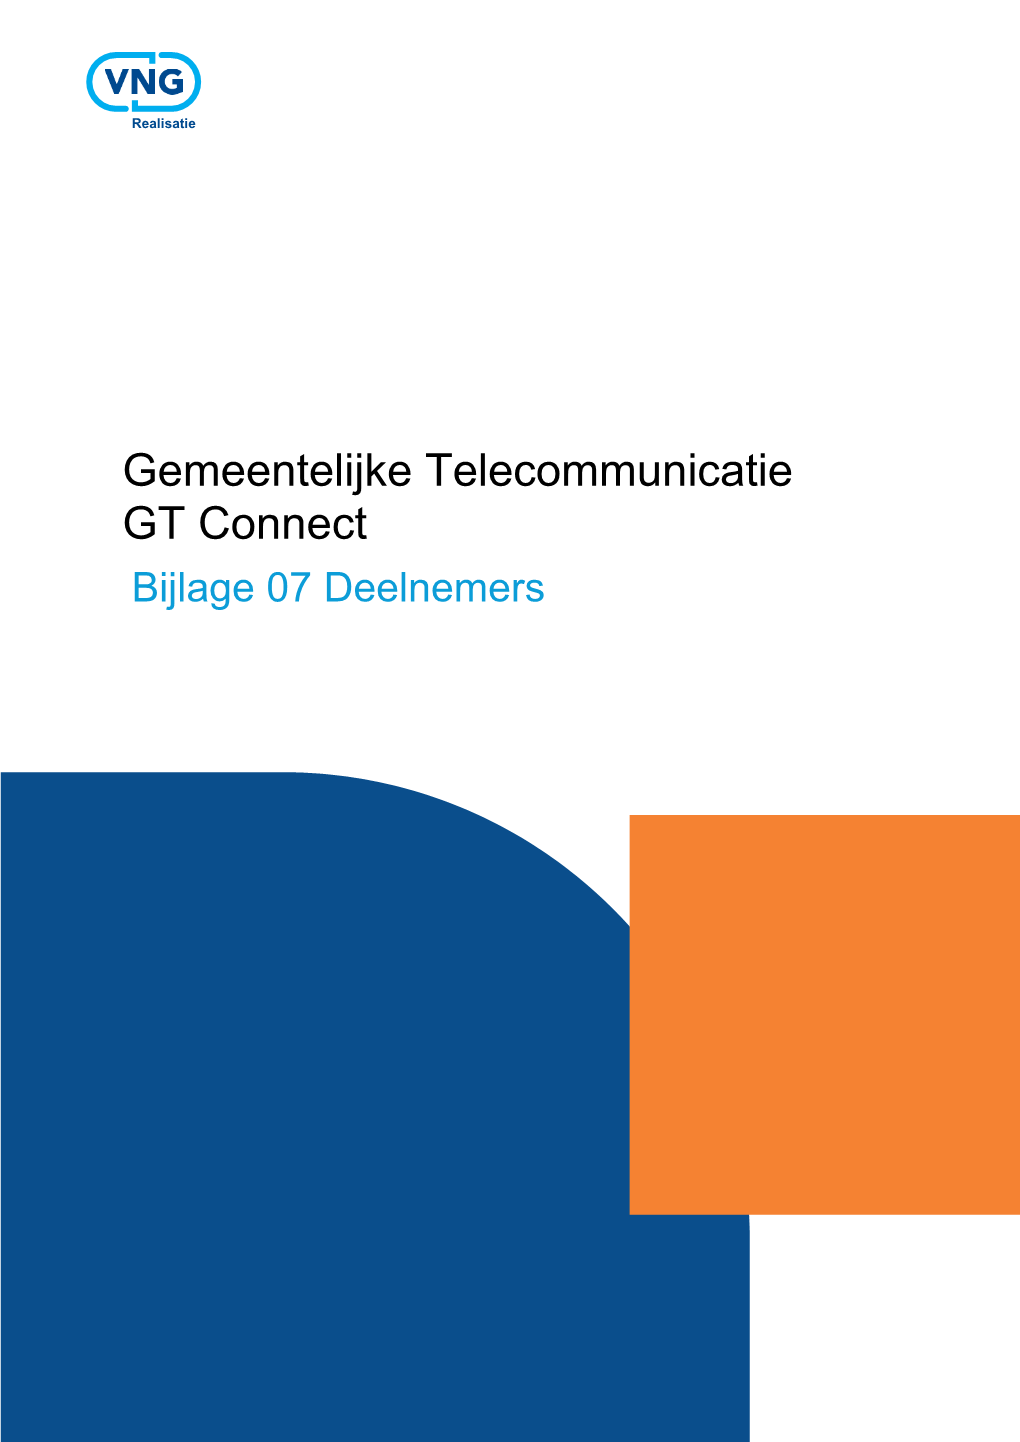 Gemeentelijke Telecommunicatie GT Connect Bijlage 07 Deelnemers